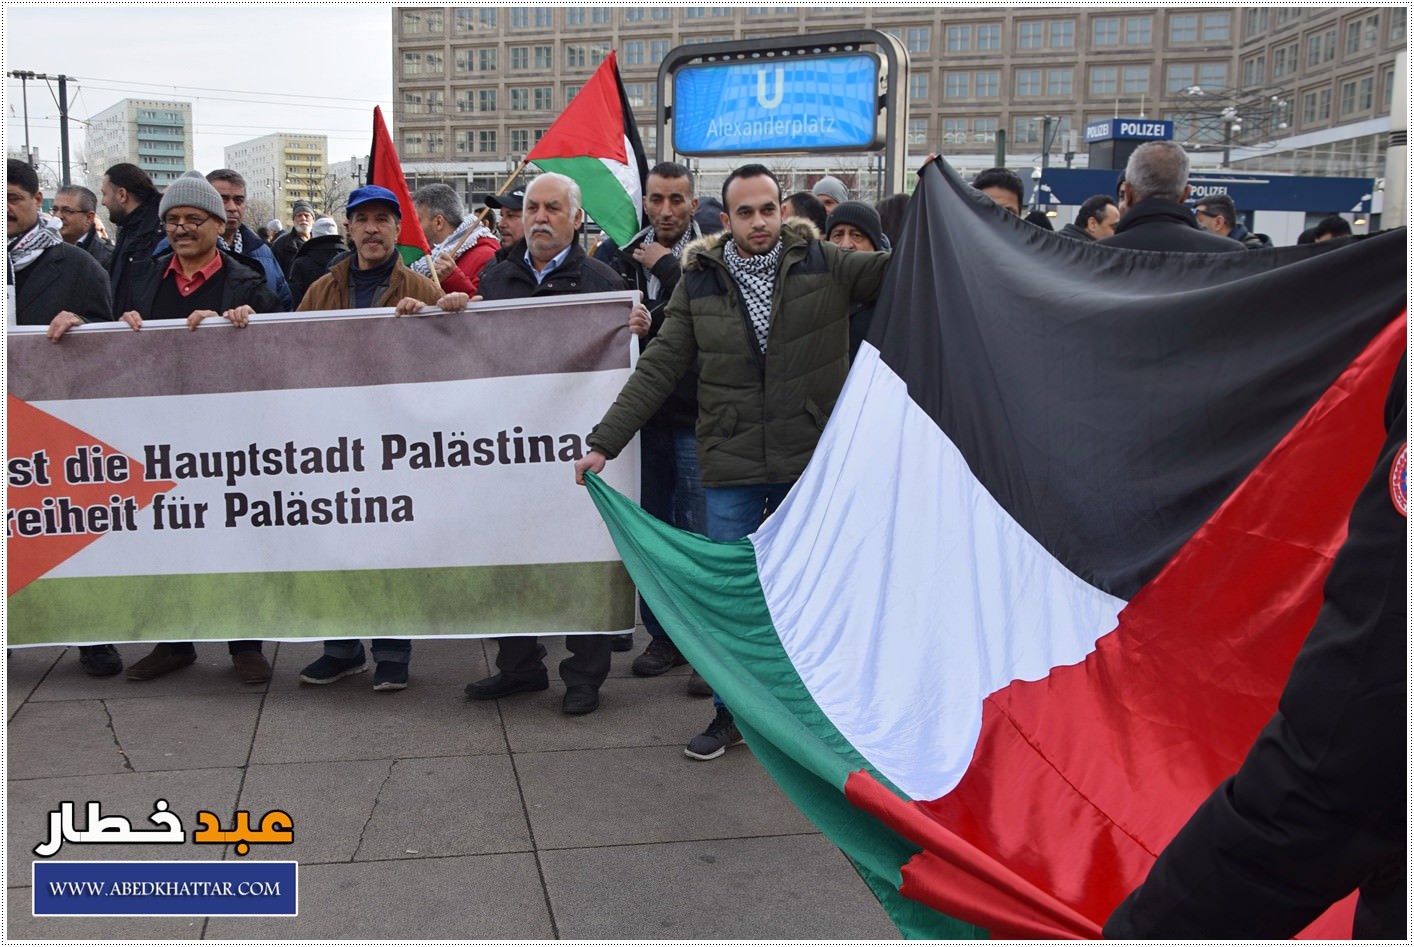 لجنة العمل الوطني الفلسطيني والمؤسسات الفلسطينية تنظم تظاهرة حاشدة ضد صفقة القرن في العاصمة الألمانية / برلين